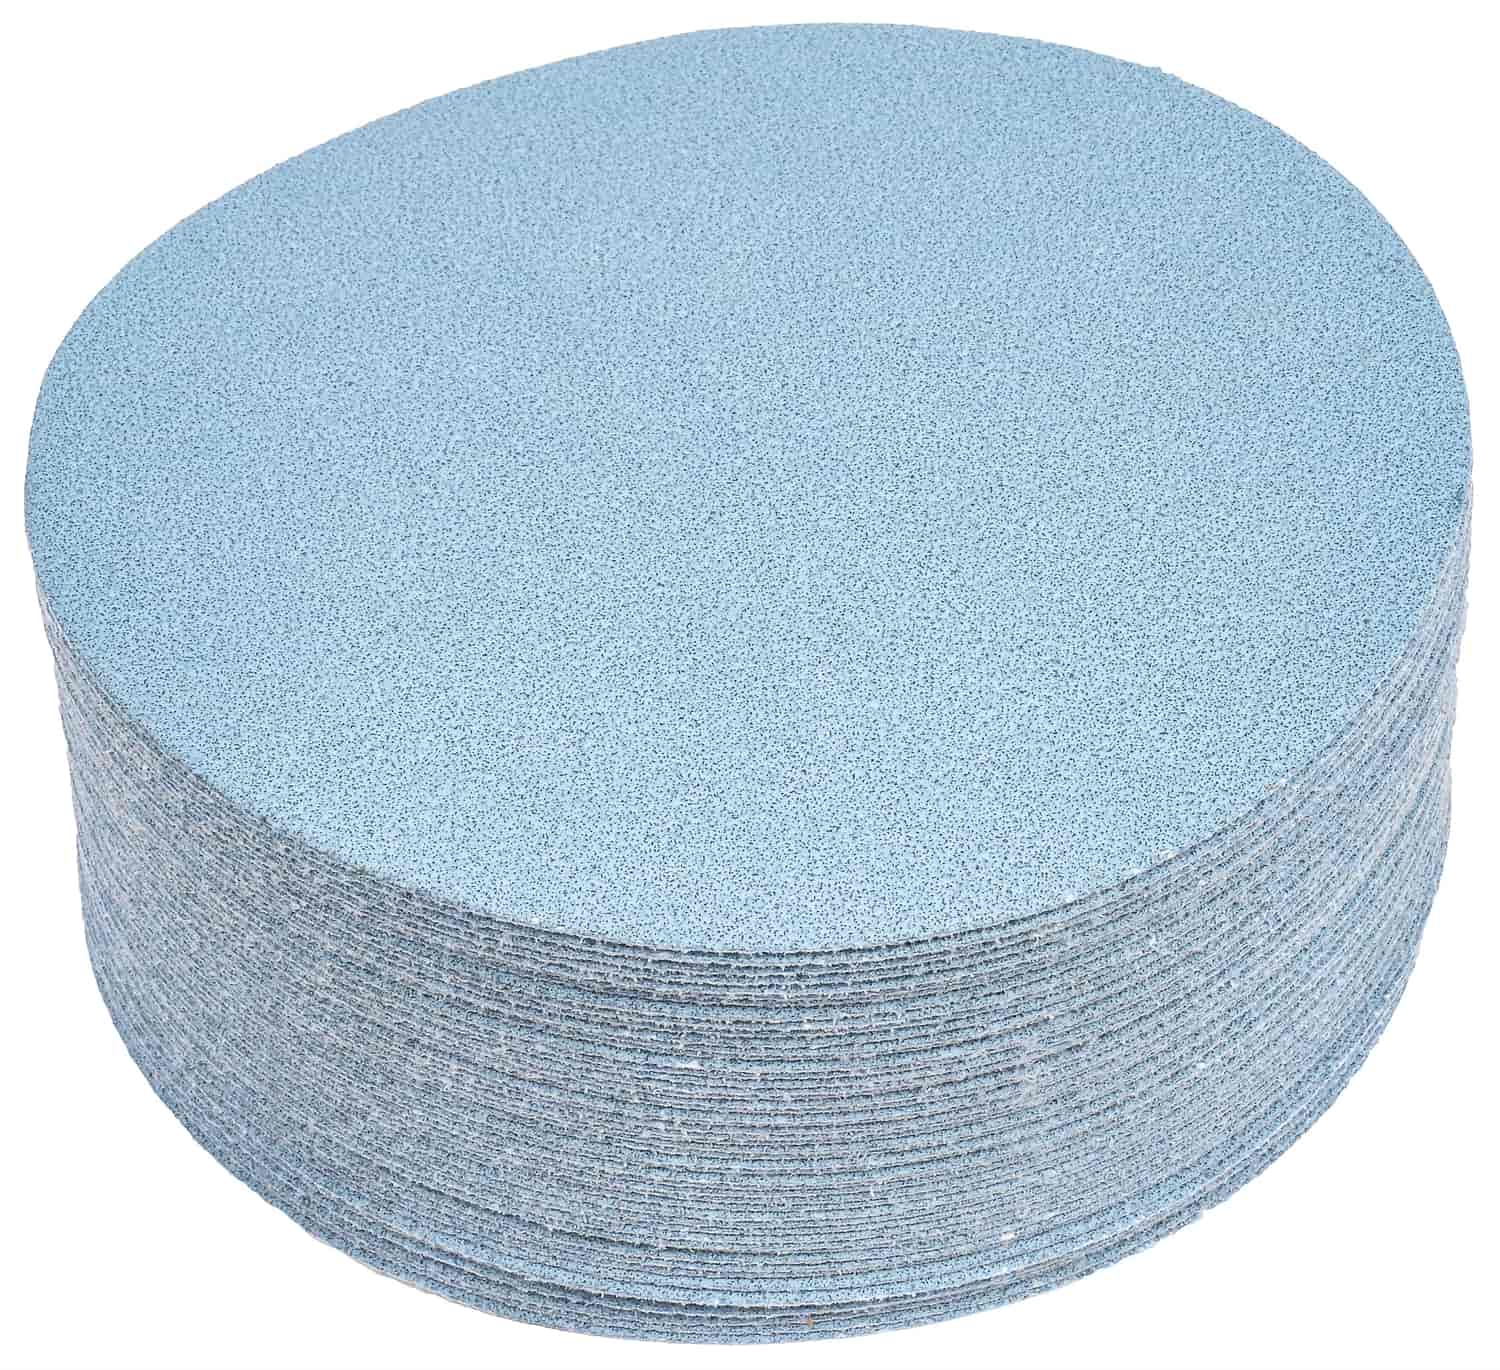 Automotive Sandpaper Discs [80 Grit]